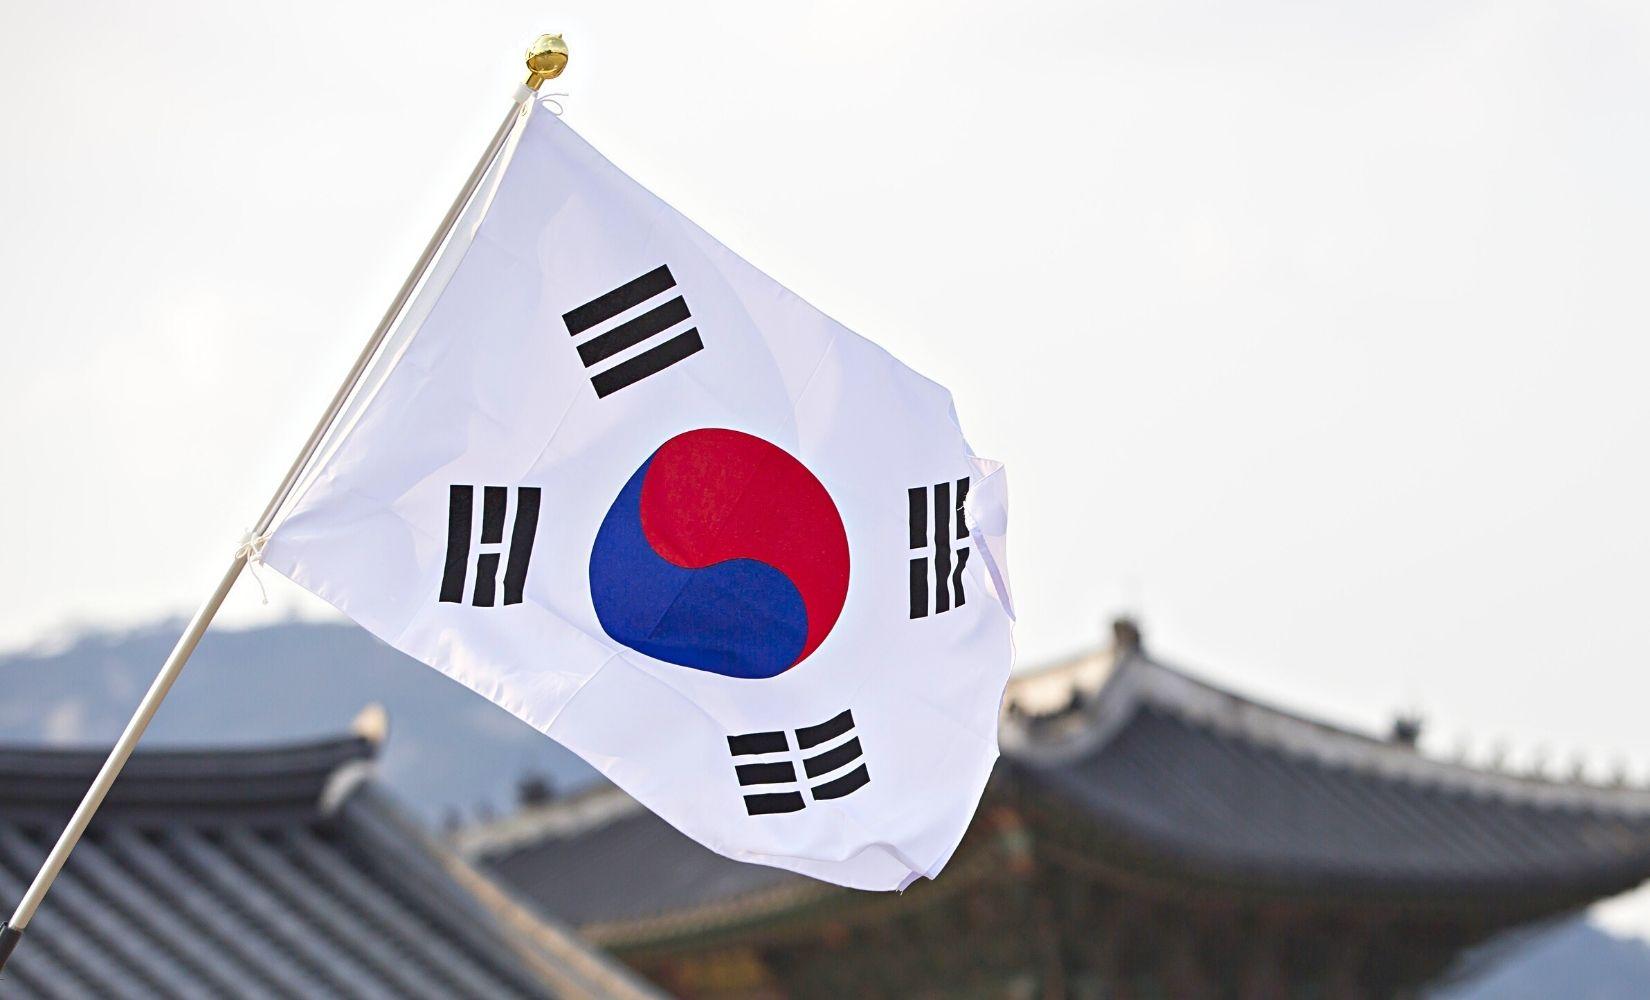 Quốc kỳ Hàn Quốc đã trở thành một trong những biểu tượng đại diện cho quốc gia này. Với sắc đỏ, trắng và xanh lá cây, quốc kỳ này tràn đầy sức sống và tình yêu đất nước. Hình ảnh quốc kỳ Hàn Quốc đang được chọn làm hình nền cho nhiều thiết bị và trang web, đem đến một cảm giác khả quan cho người xem.